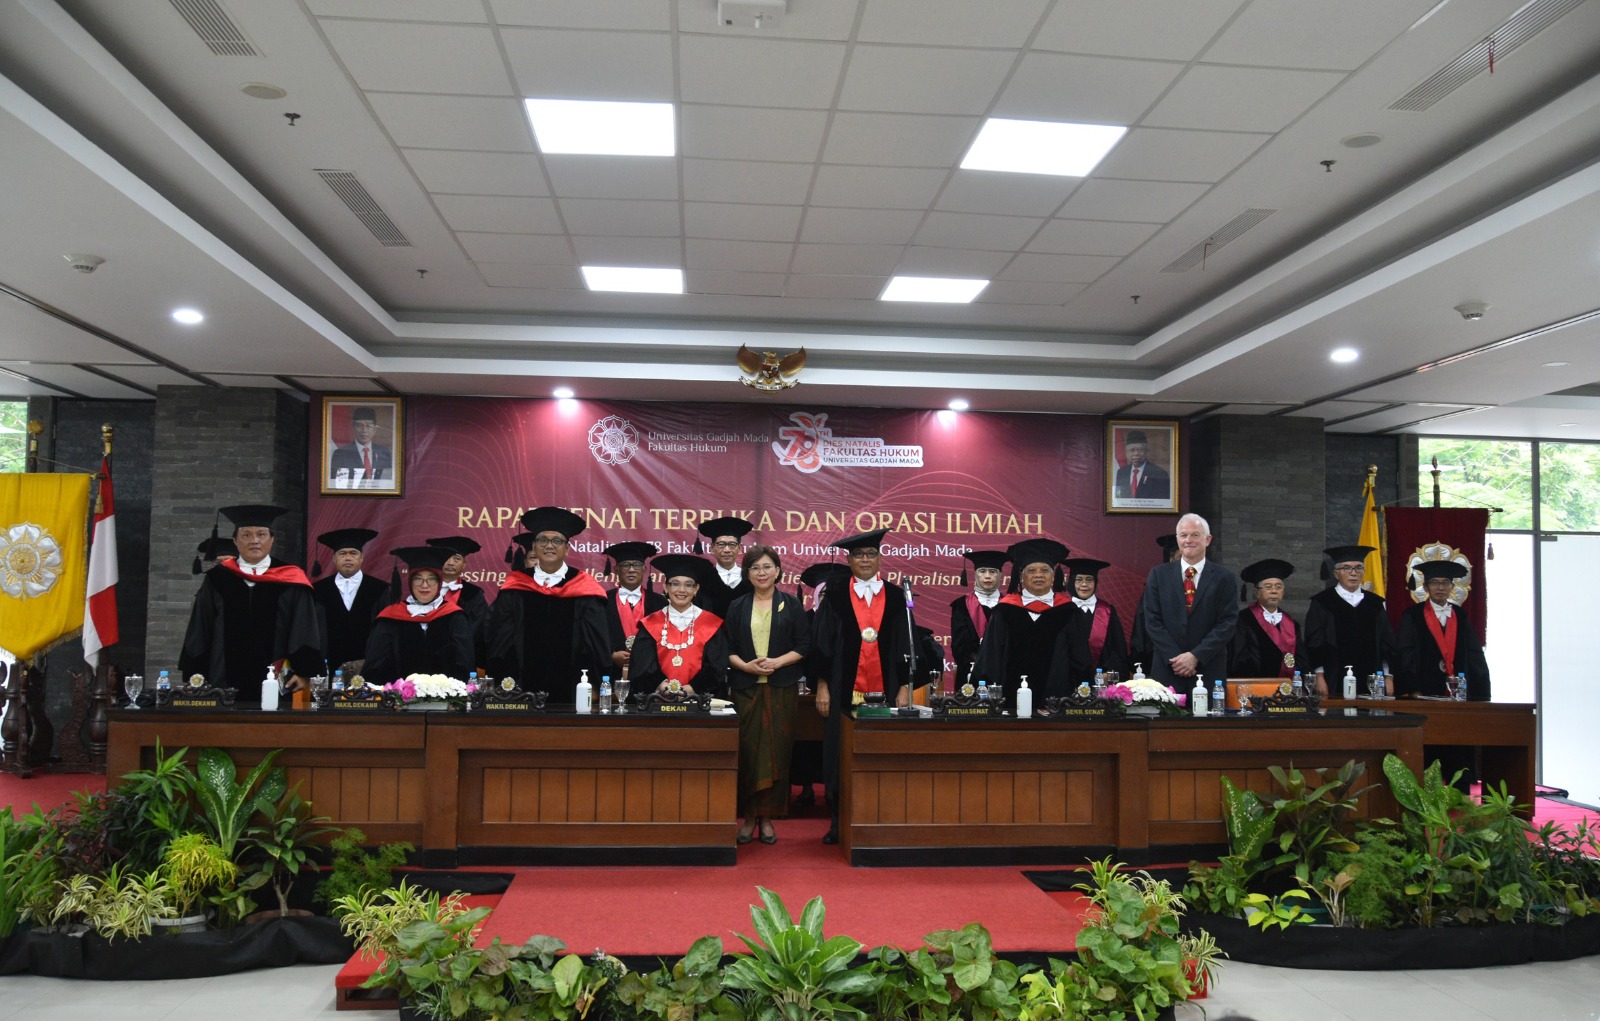 Hakim Pengadilan Negeri Yogyakarta Menghadiri Rapat Senat Terbuka dan Orasi Ilmiah bersama Fakultas Hukum UGM